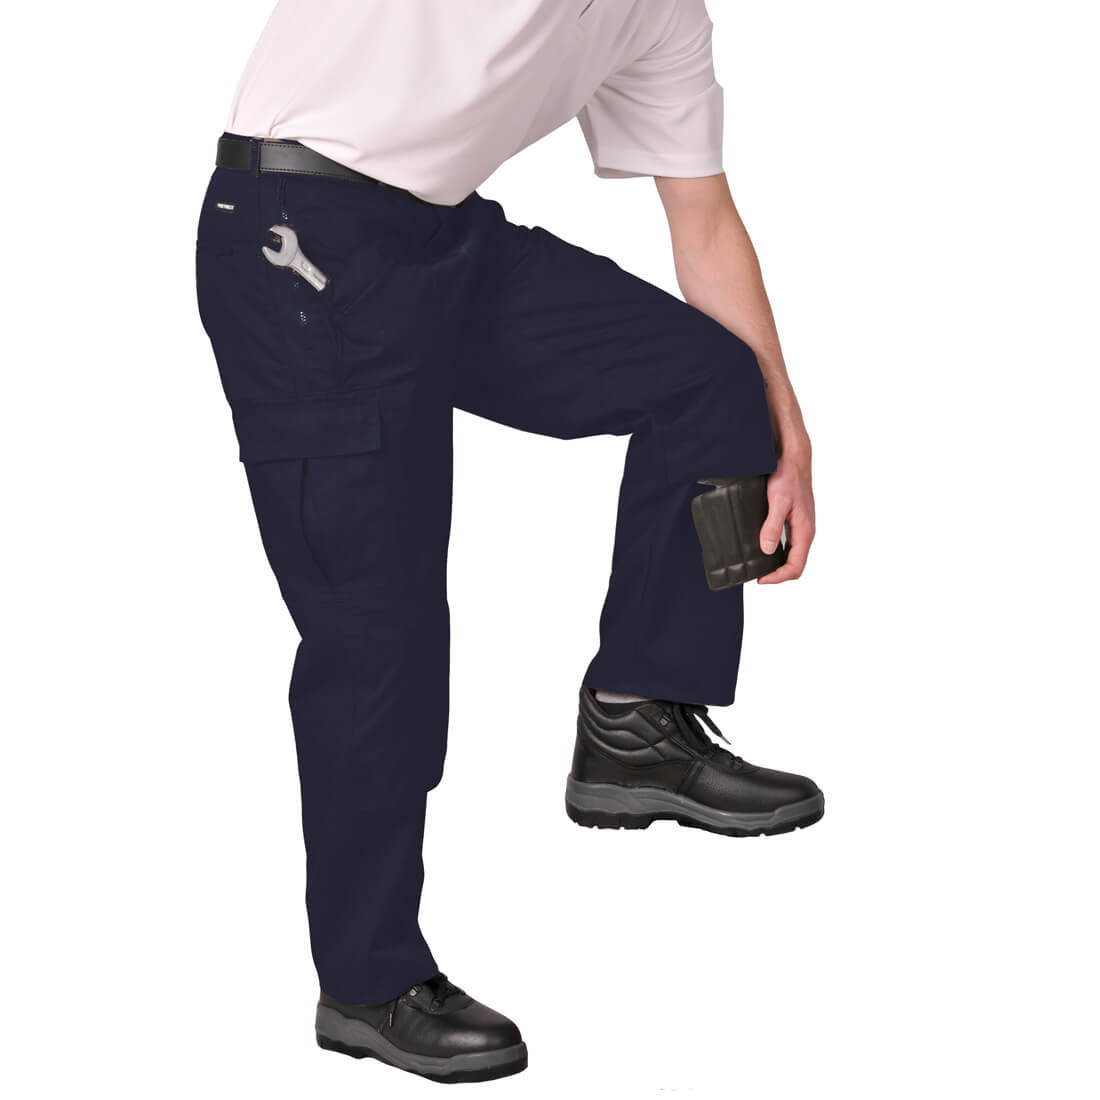 Pantaloni Action - Imbracaminte de protectie